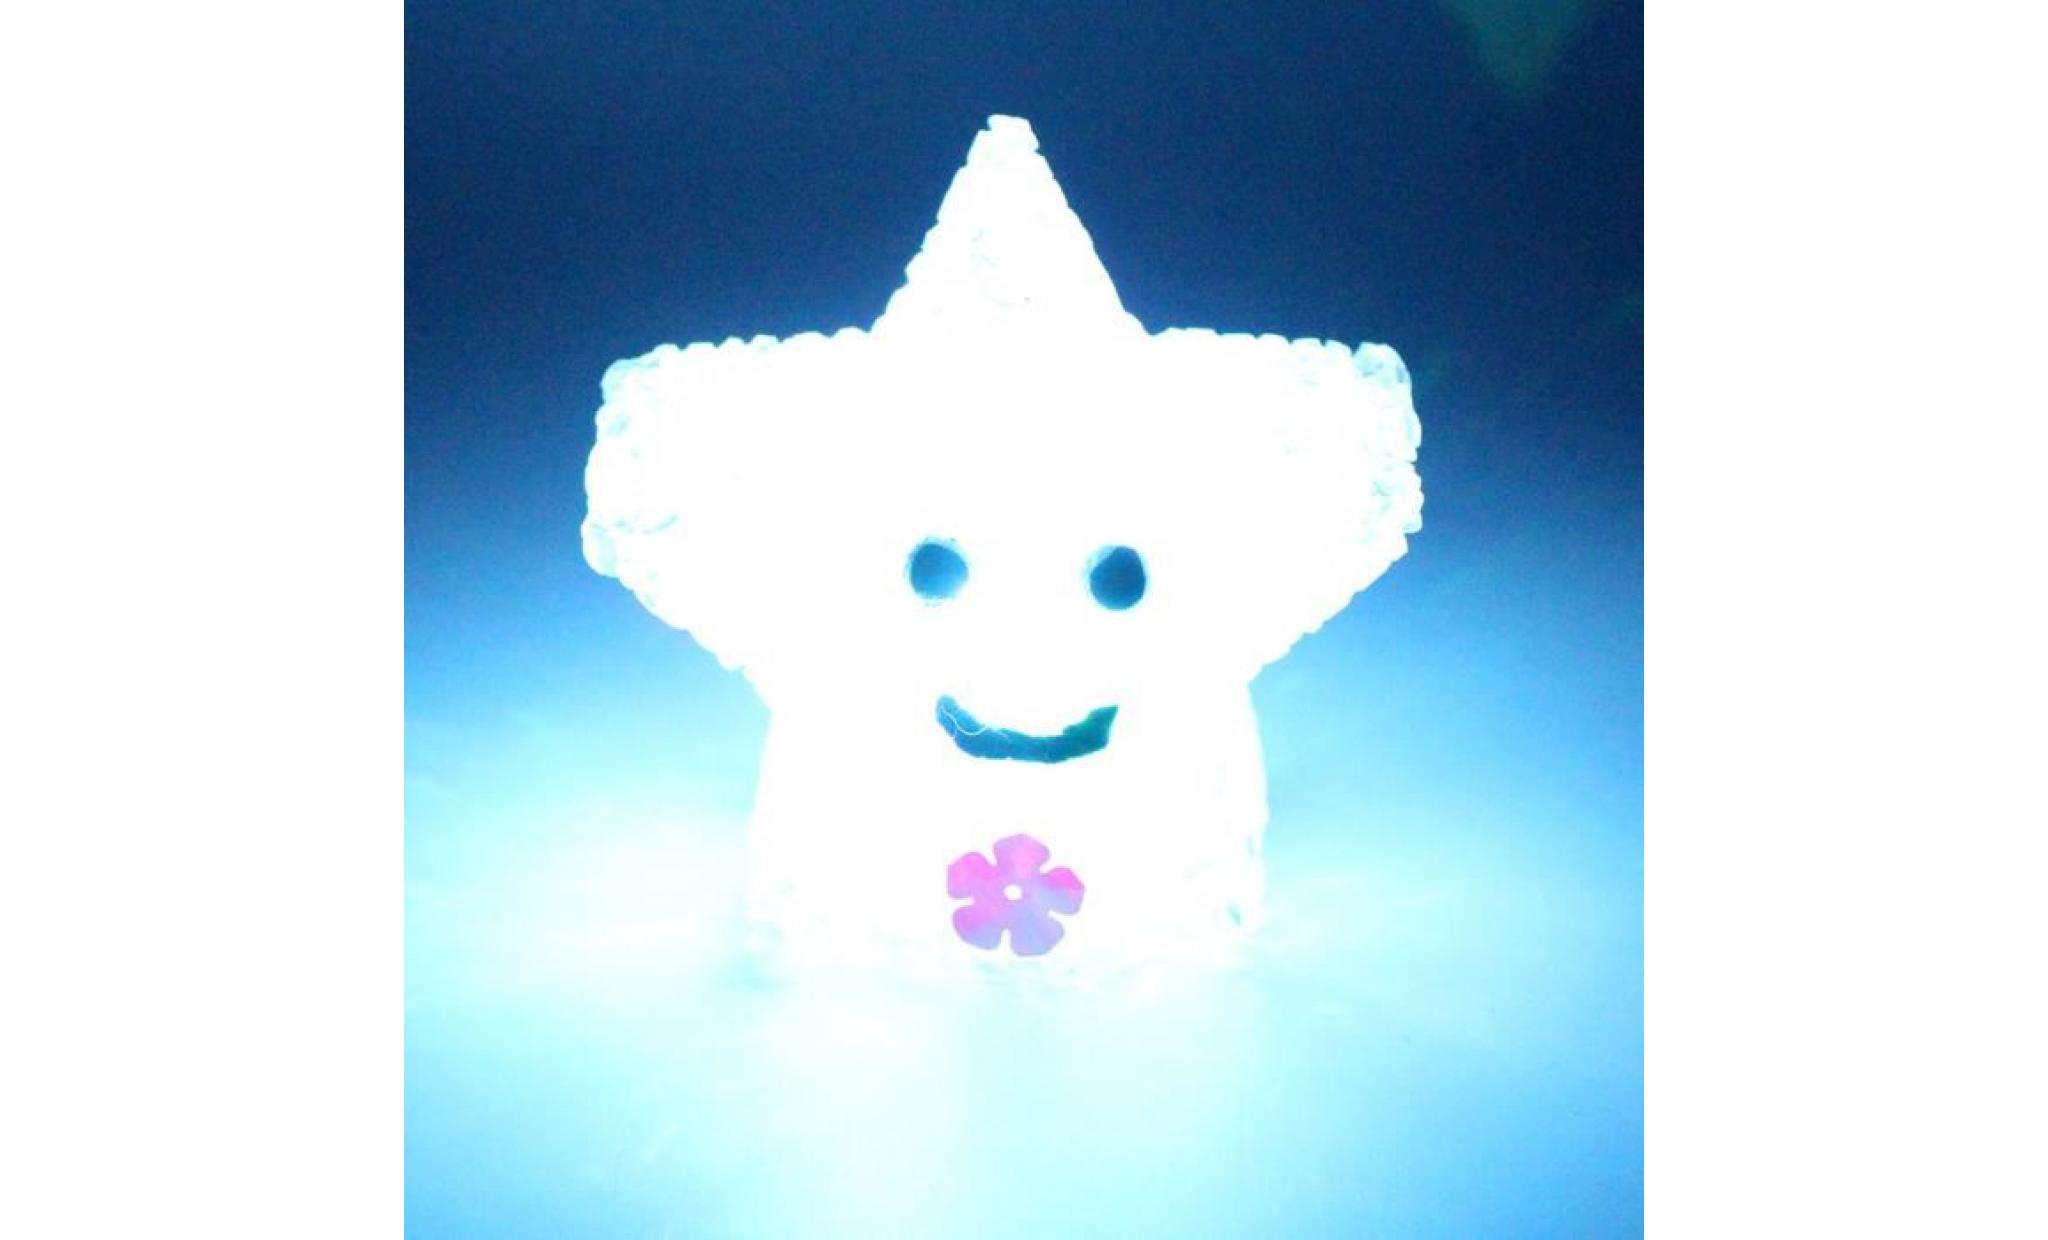 pachasky®nouveau changement de couleur led light multi color magic nouveauté star smile night lamp@zf309 pas cher